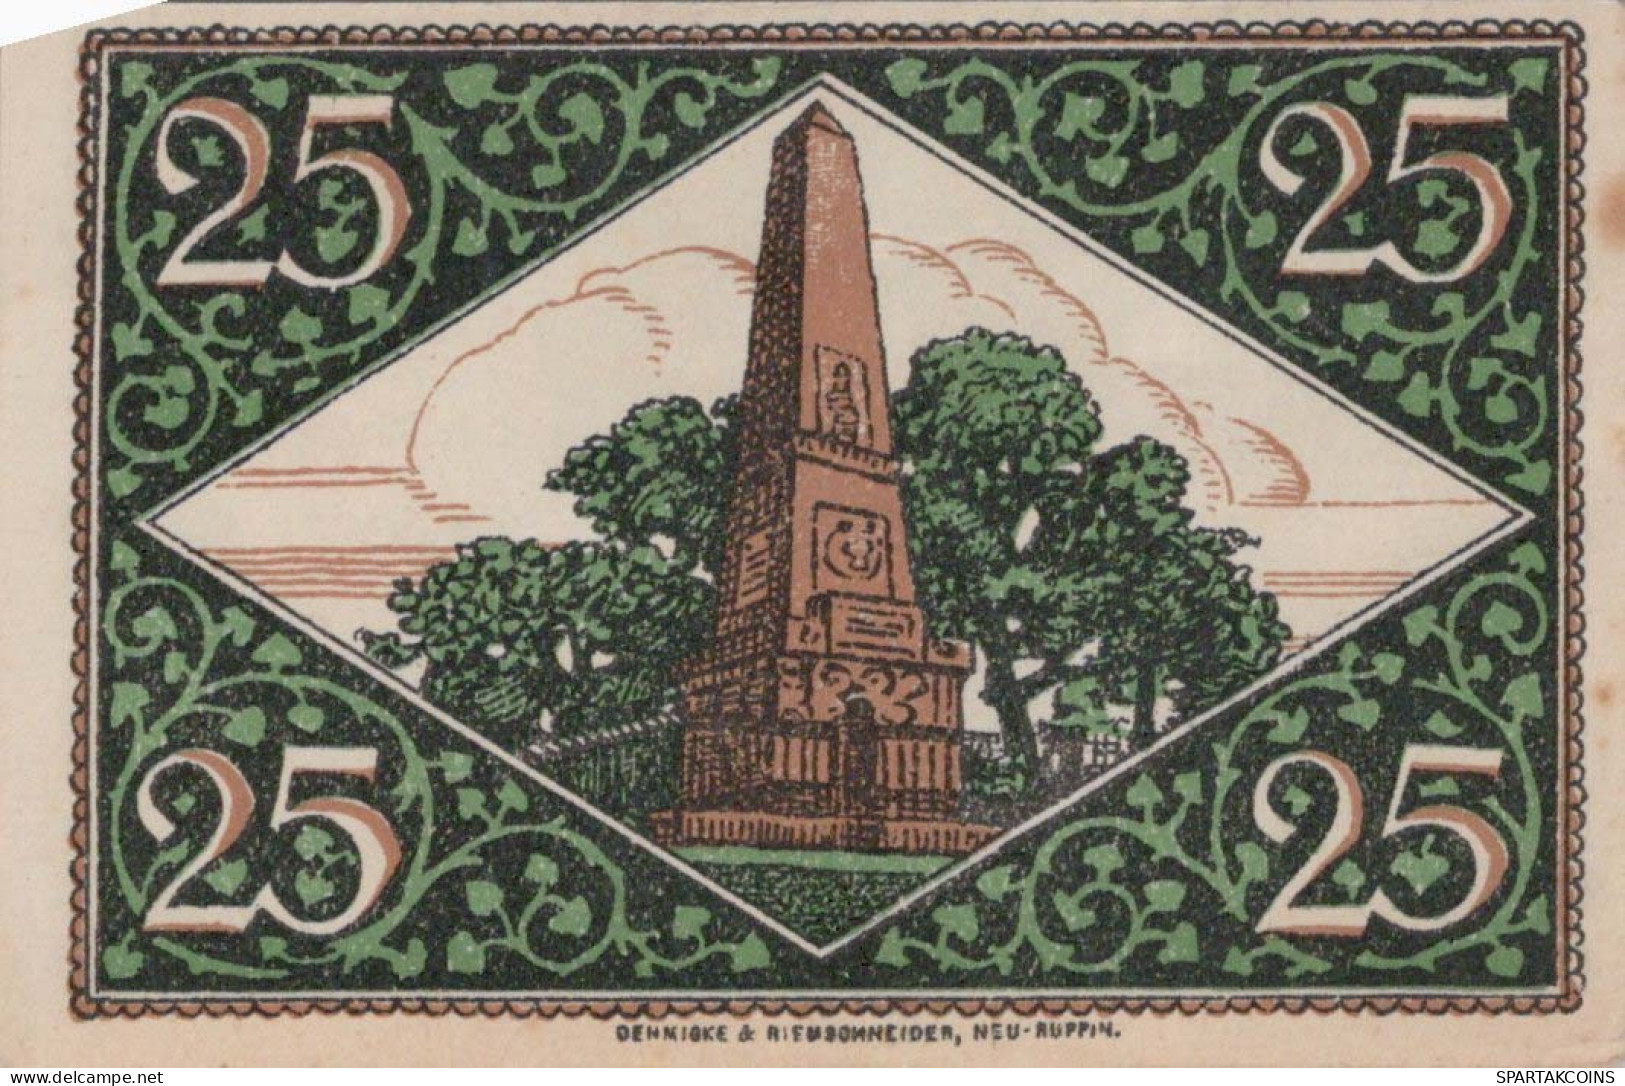 25 PFENNIG Stadt RHEINSBERG Brandenburg UNC DEUTSCHLAND Notgeld Banknote #PI937 - [11] Emissioni Locali